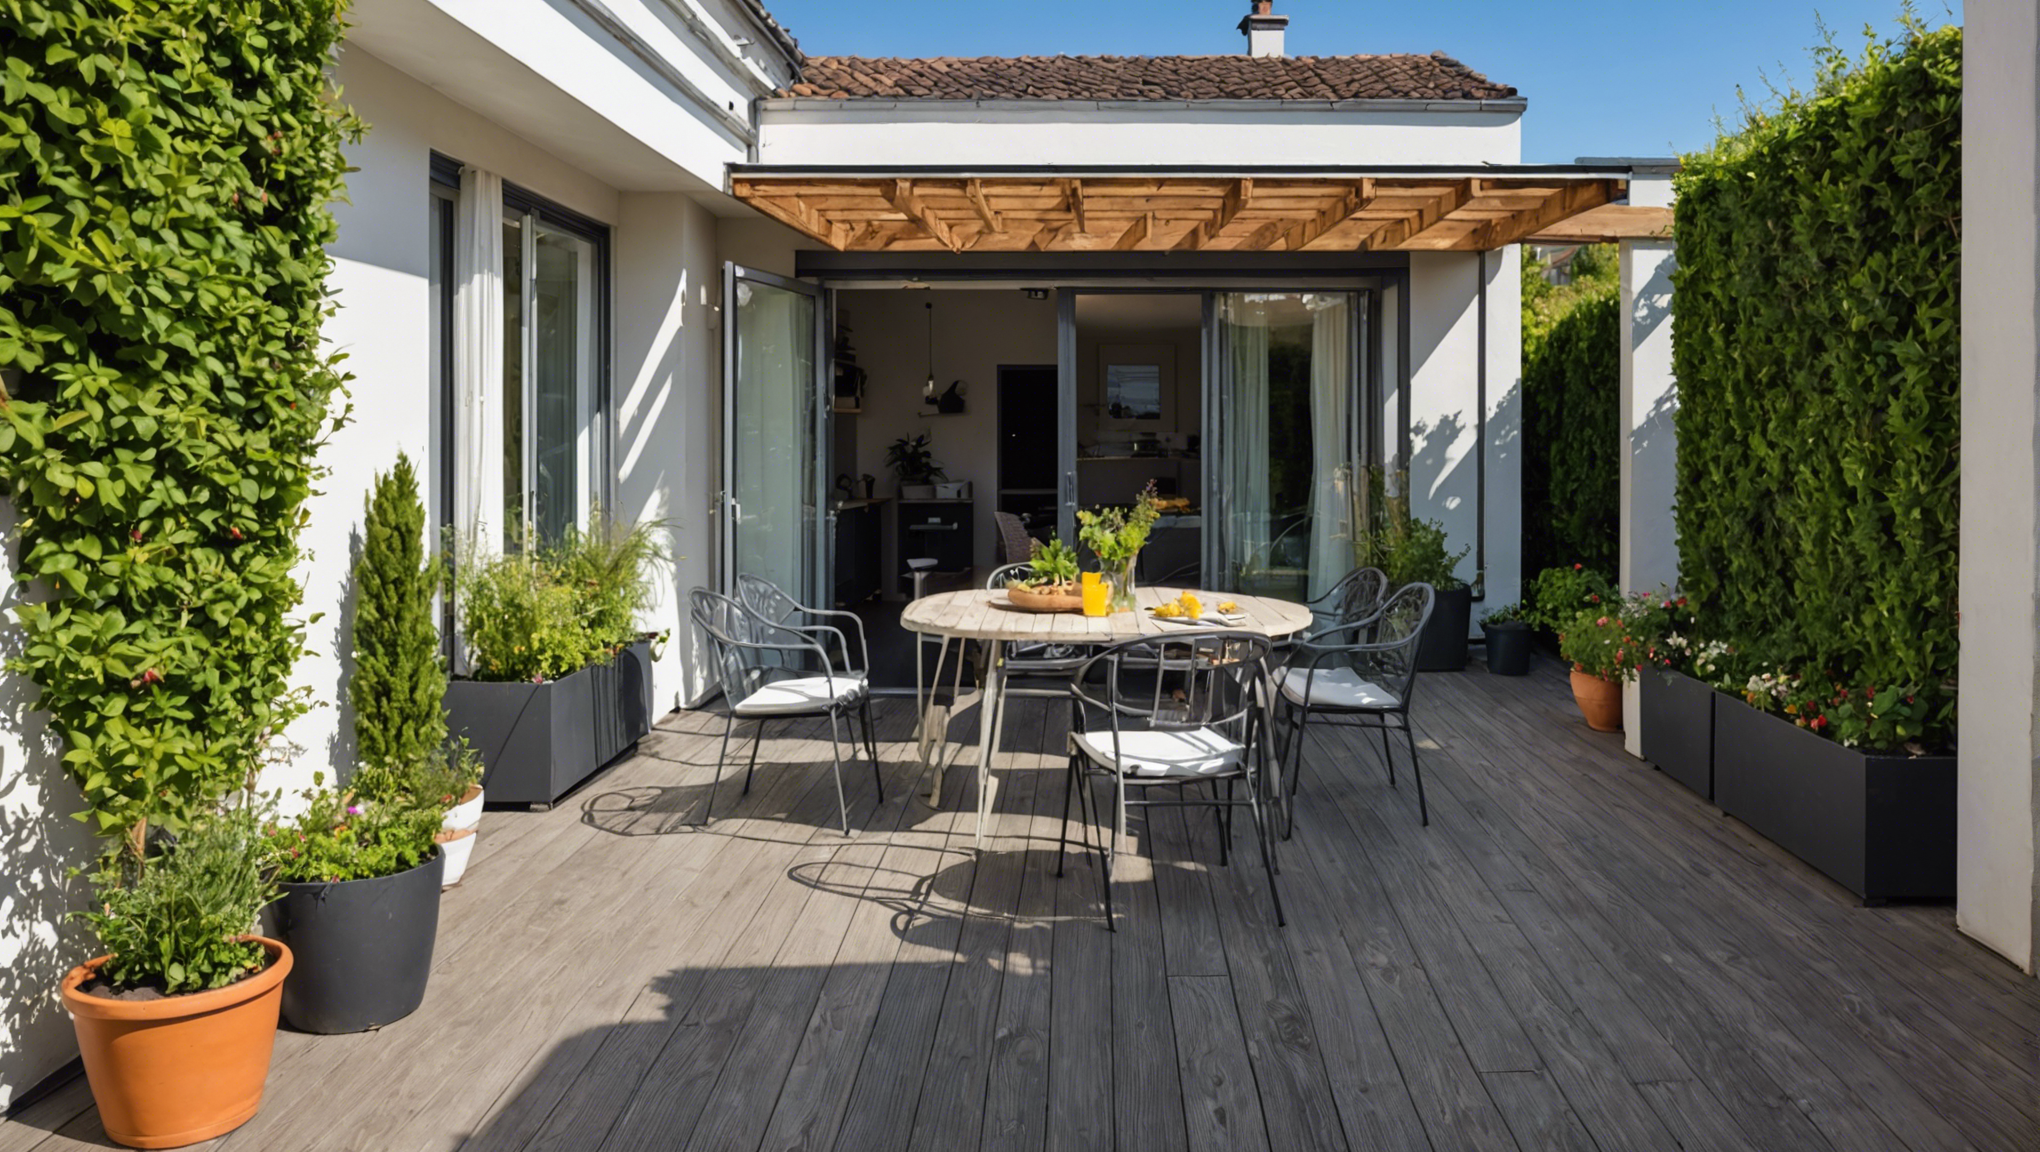 découvrez nos conseils et idées pour aménager une terrasse devant votre maison. profitez de cet espace extérieur pour créer un lieu de convivialité et de détente, adapté à vos besoins et à votre style de vie.